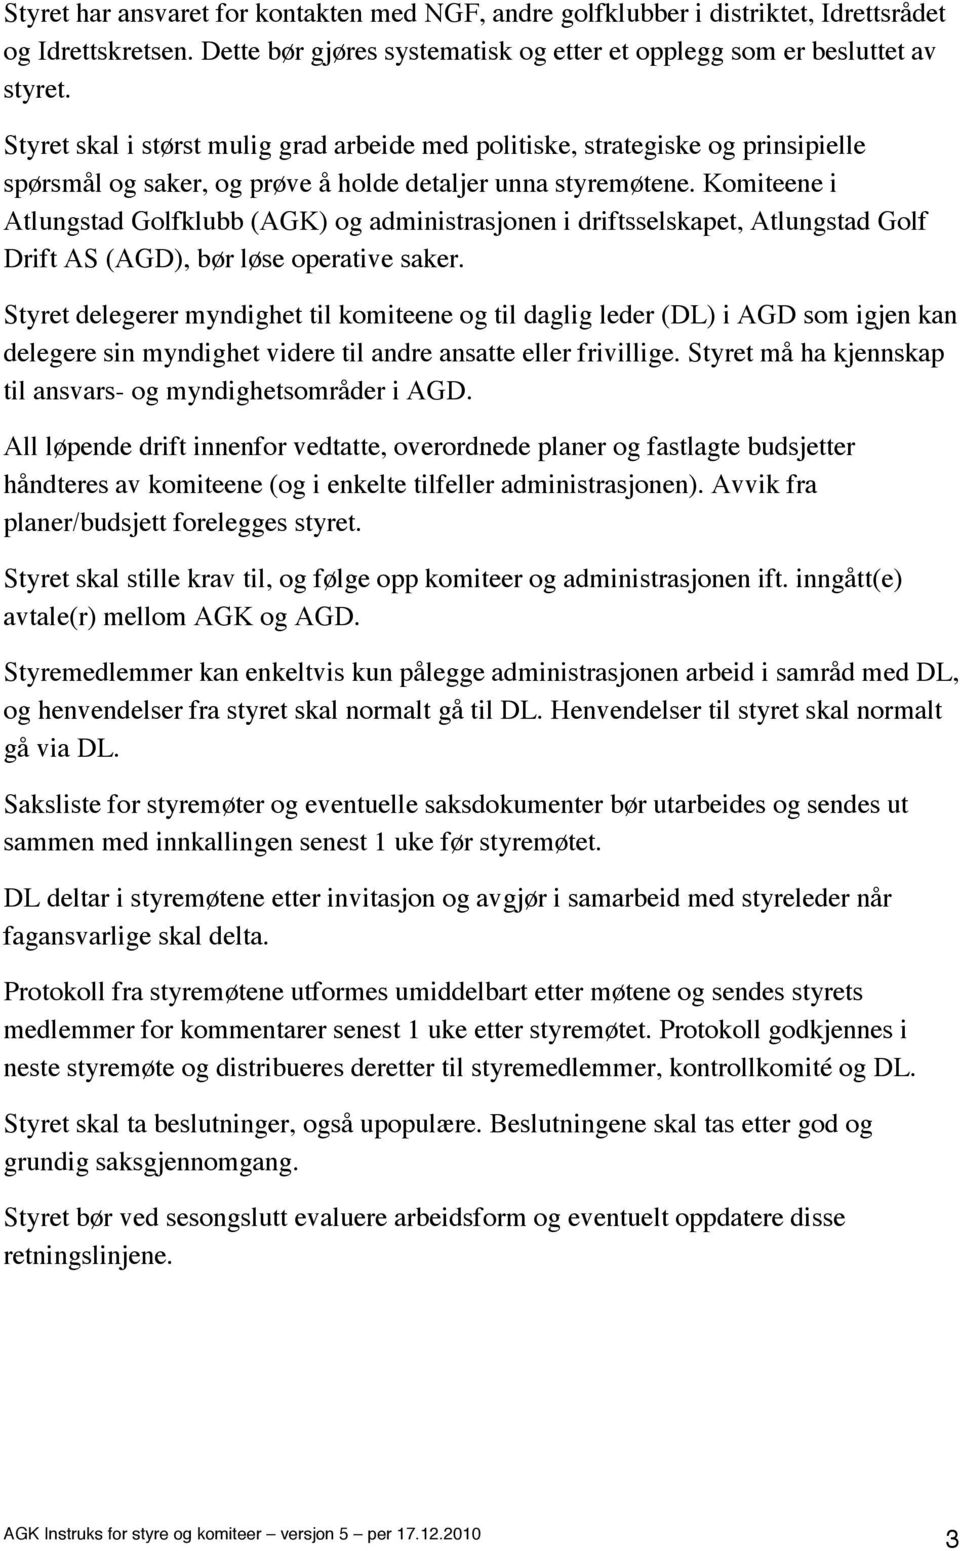 Komiteene i Atlungstad Golfklubb (AGK) og administrasjonen i driftsselskapet, Atlungstad Golf Drift AS (AGD), bør løse operative saker.